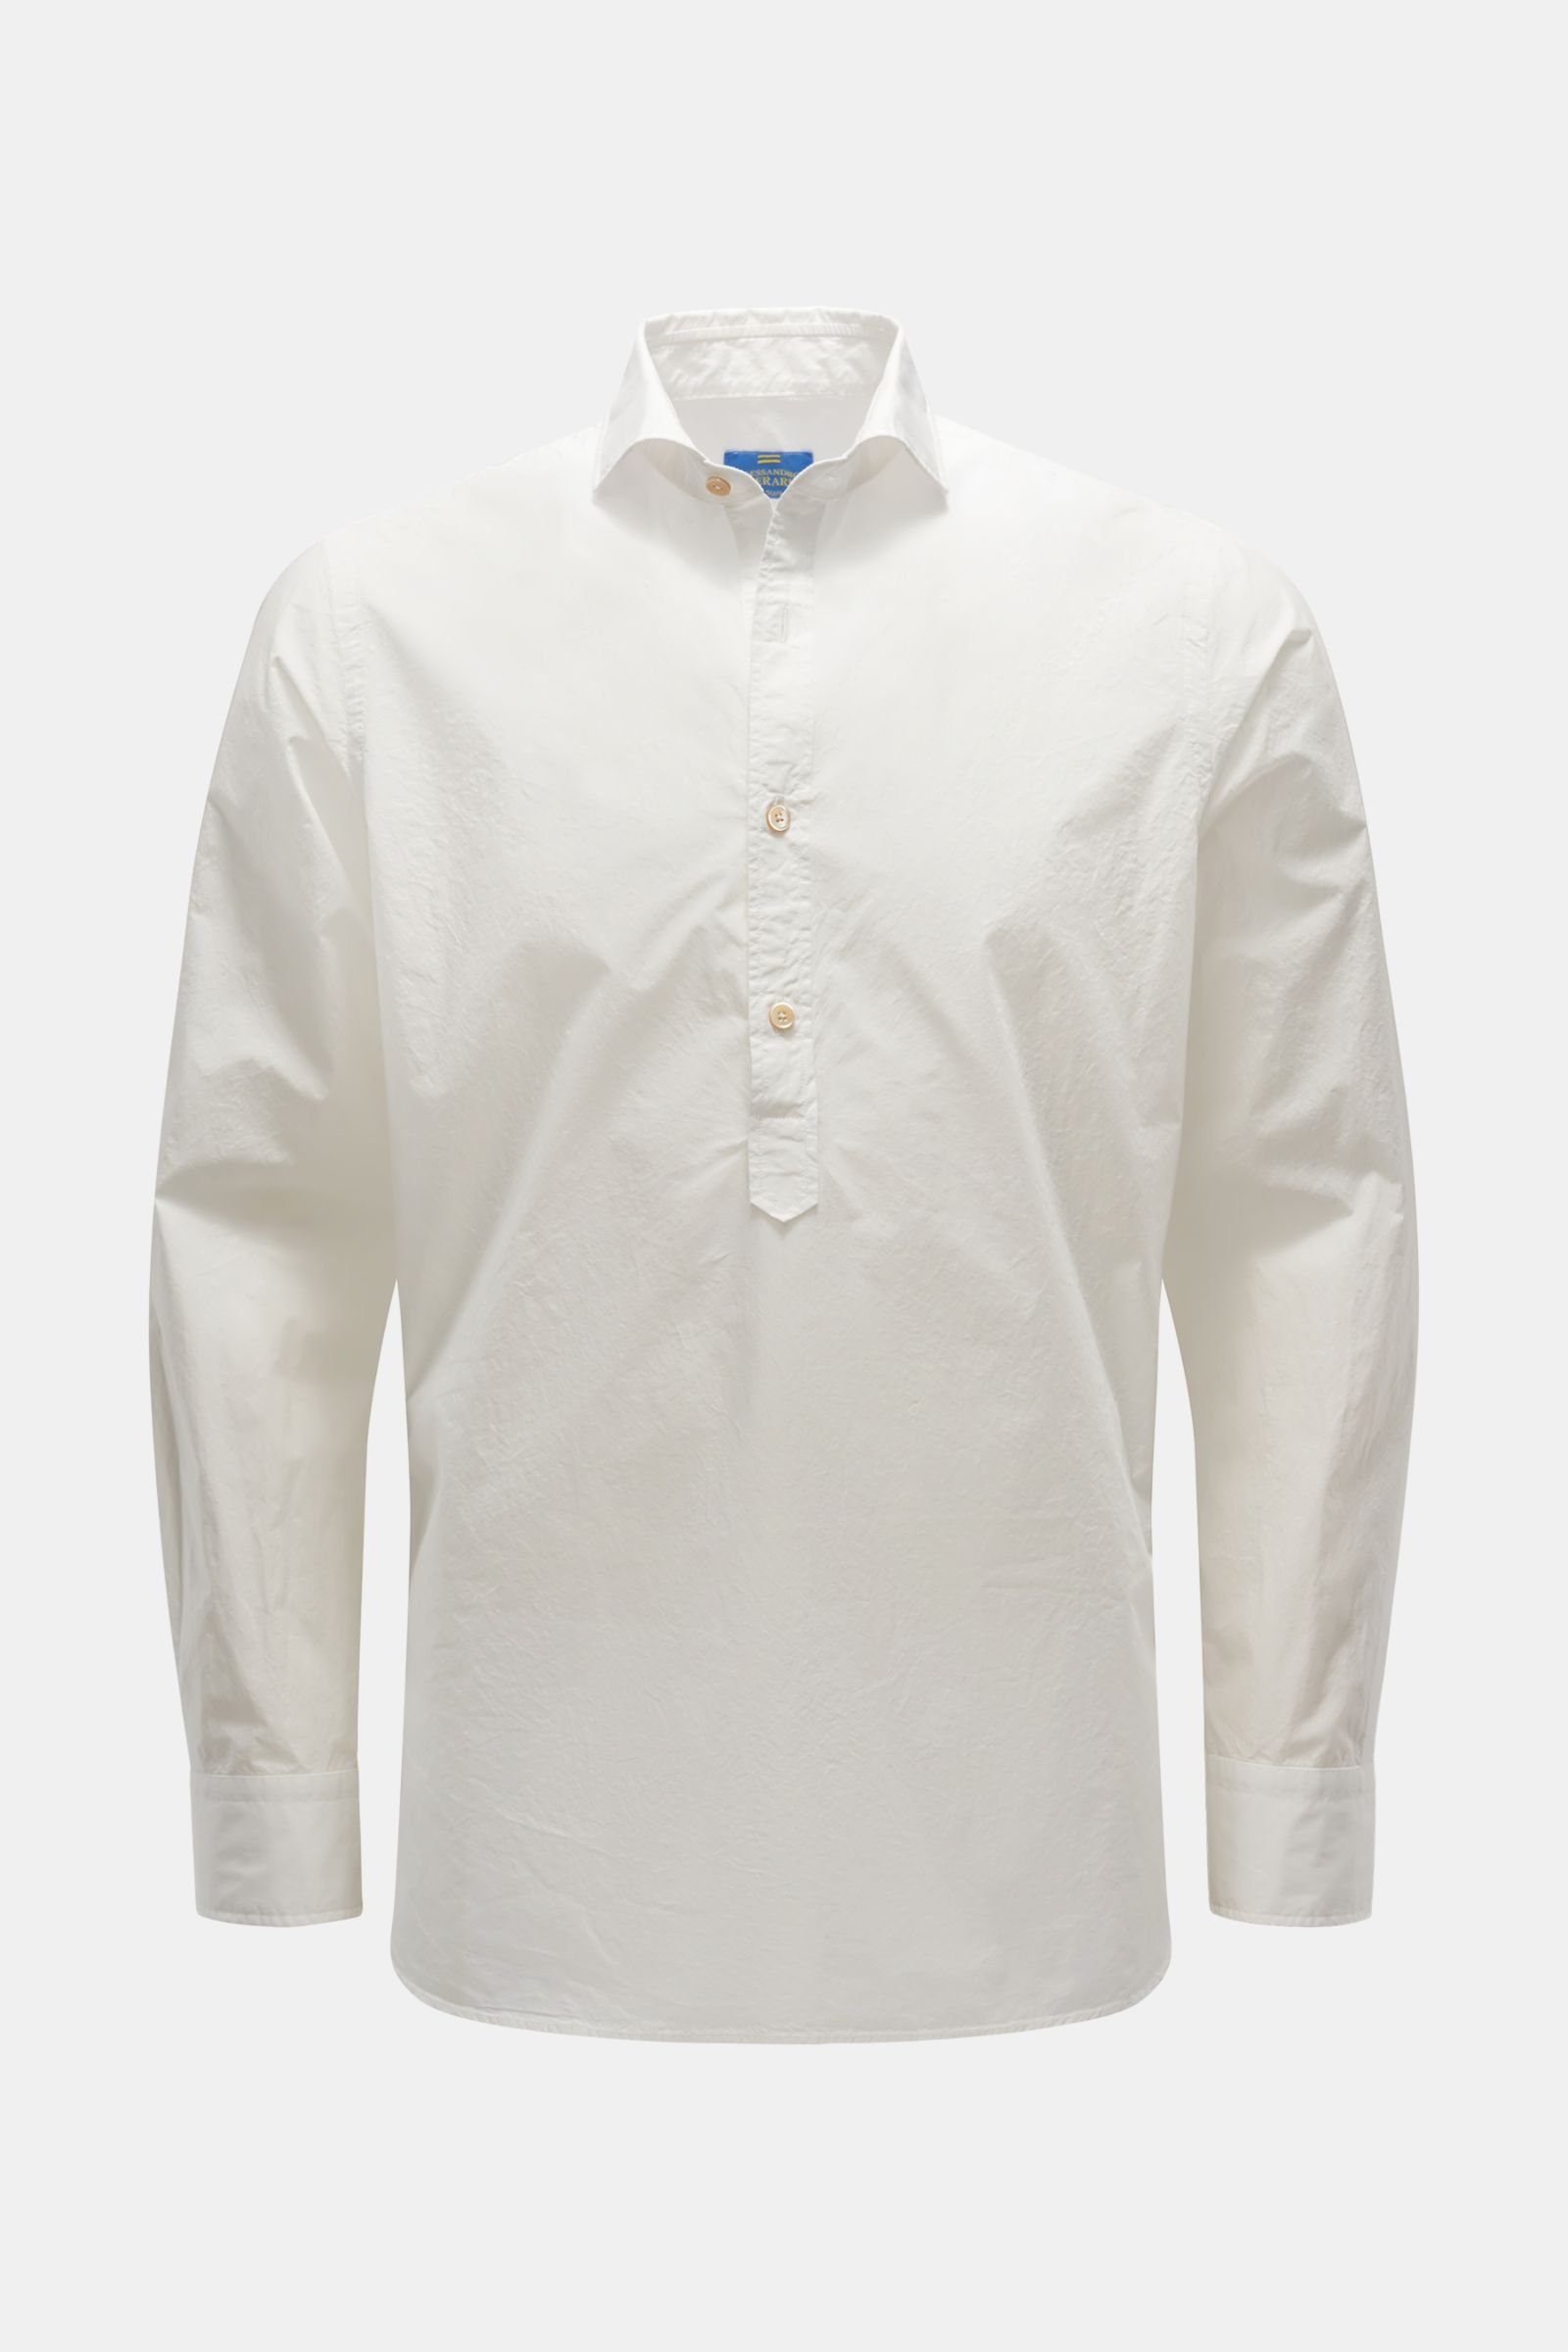 Popover shirt 'Polos' shark collar white